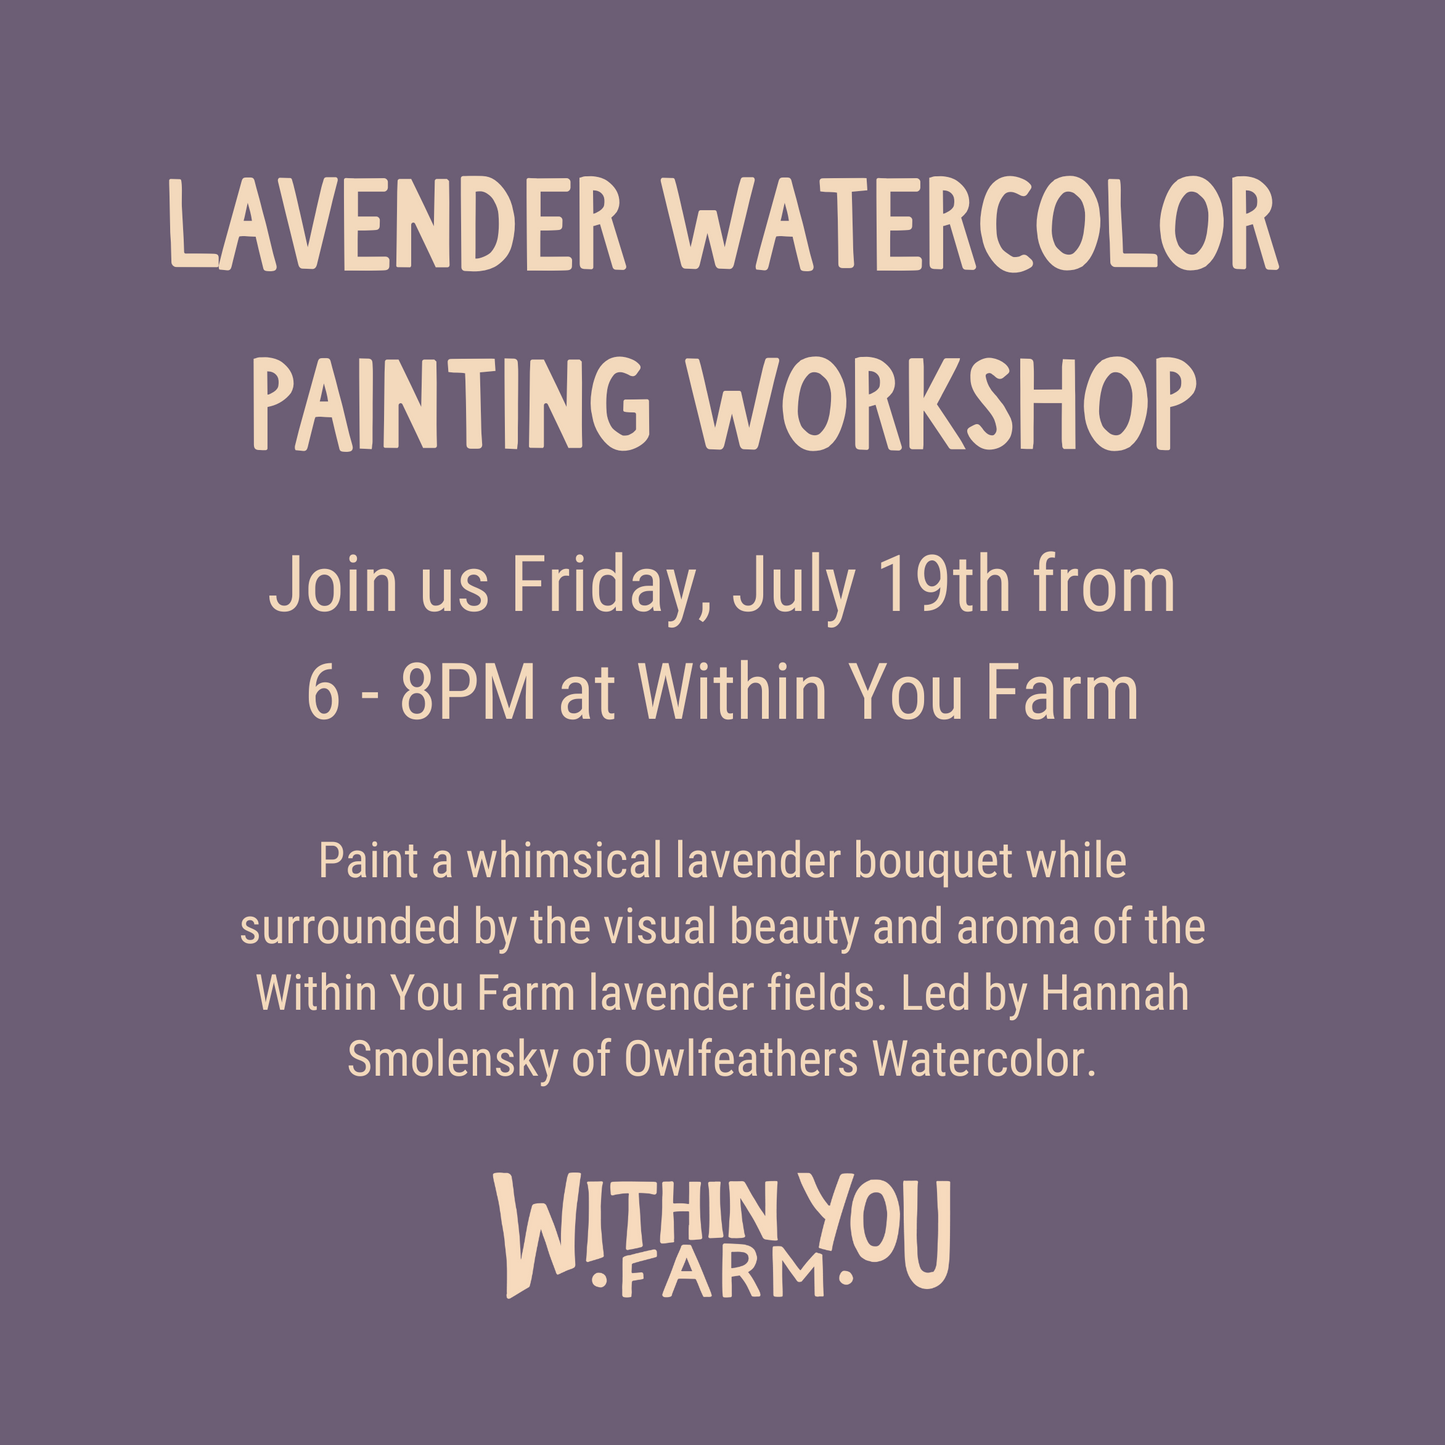 Lavender Watercolor Painting Workshop (7/19)